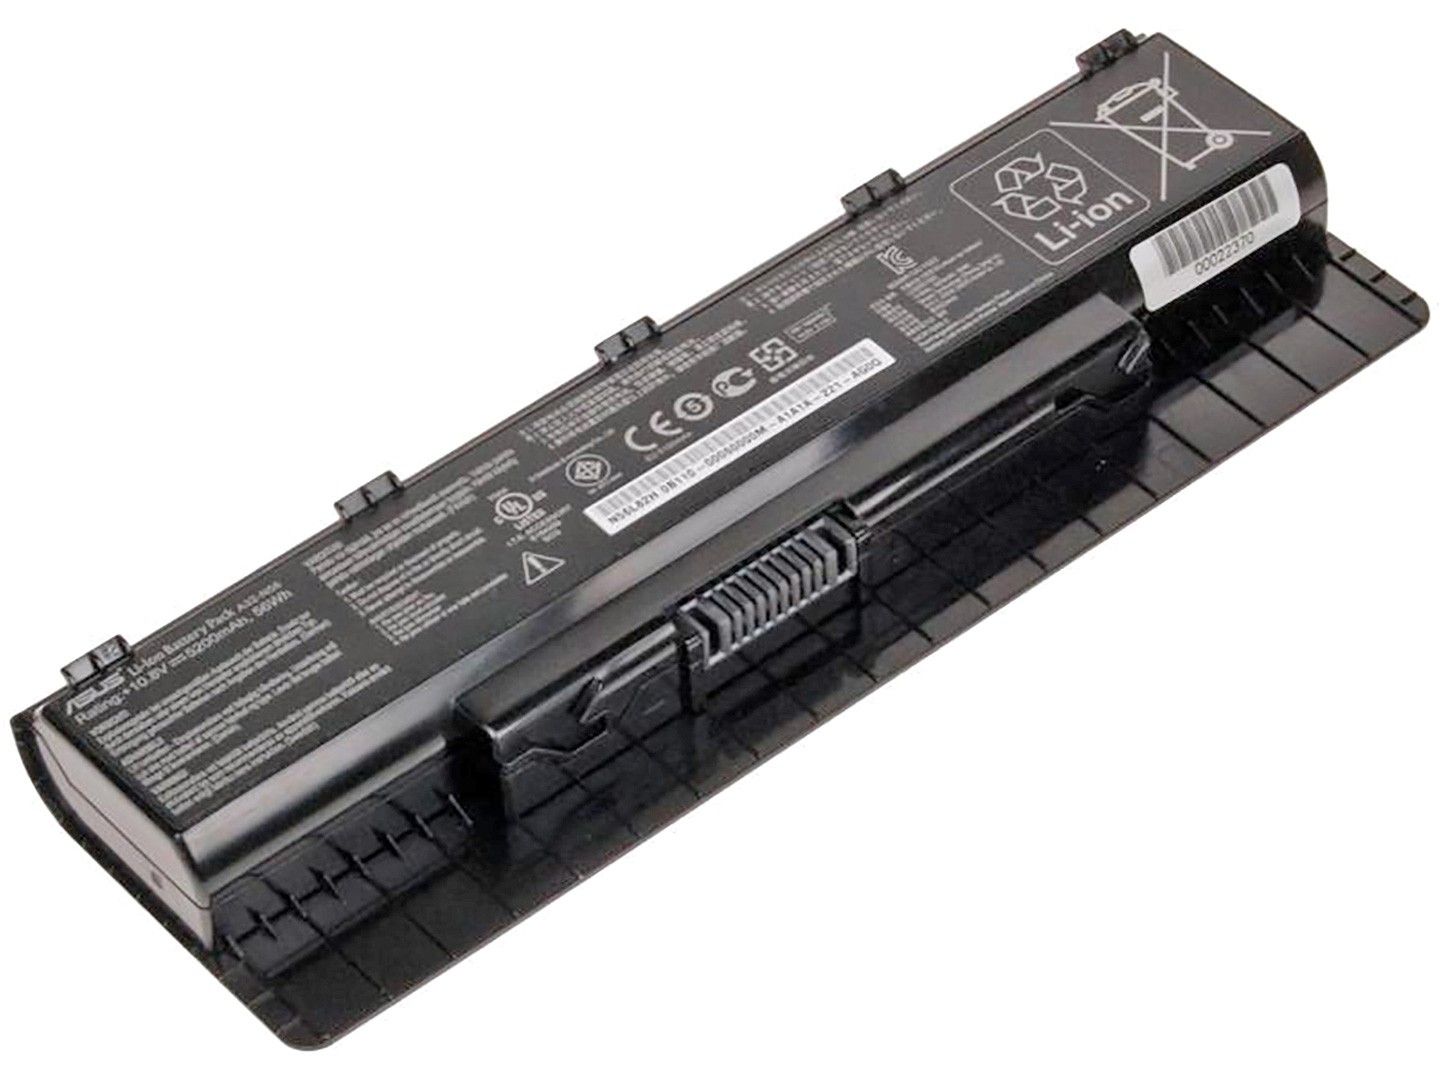 ASUS Bateria A32-N56 Original 6C 10.8V 56Wh 5.2Ah (0B110-00060000, A31-N56, A32-N56) - HPecas.com